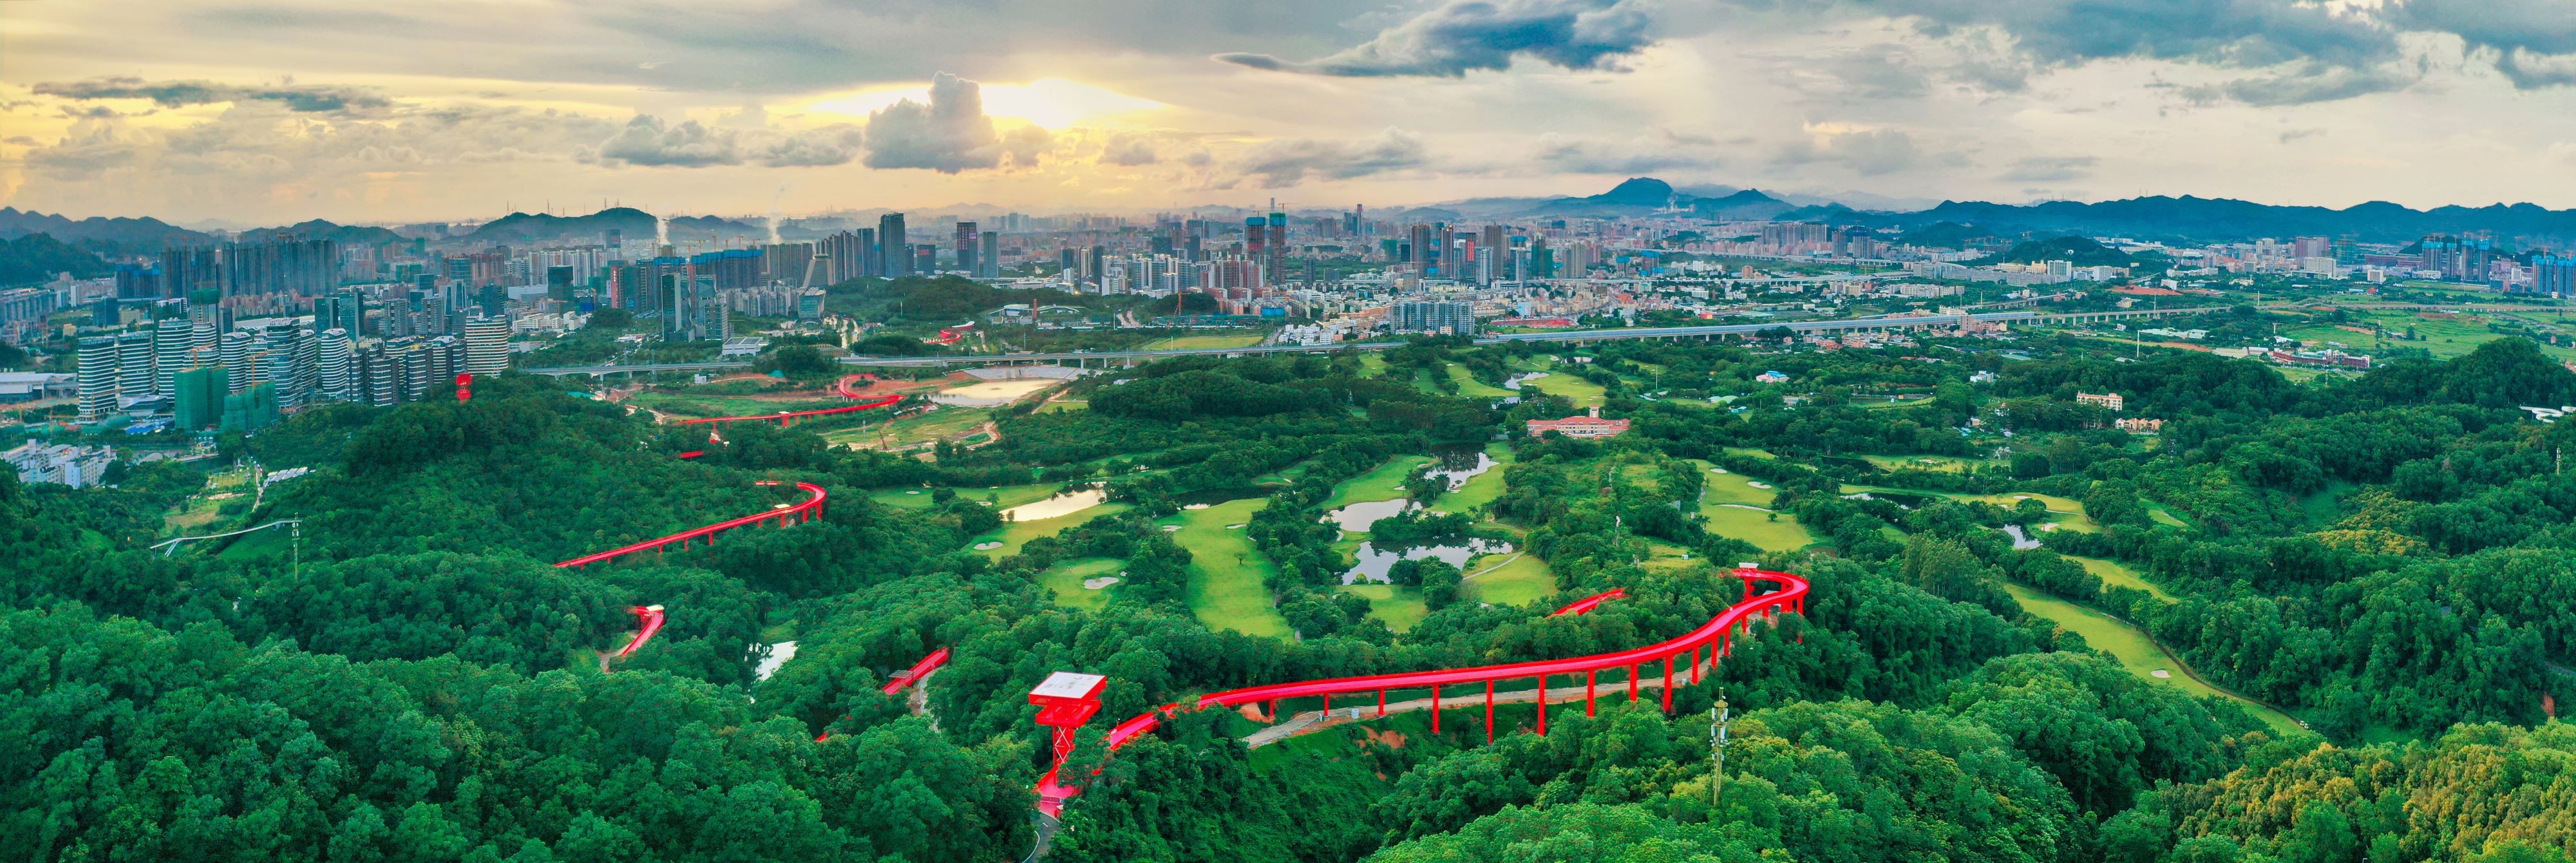 市民游客可在深圳市光明区虹桥公园欣赏初升的太阳